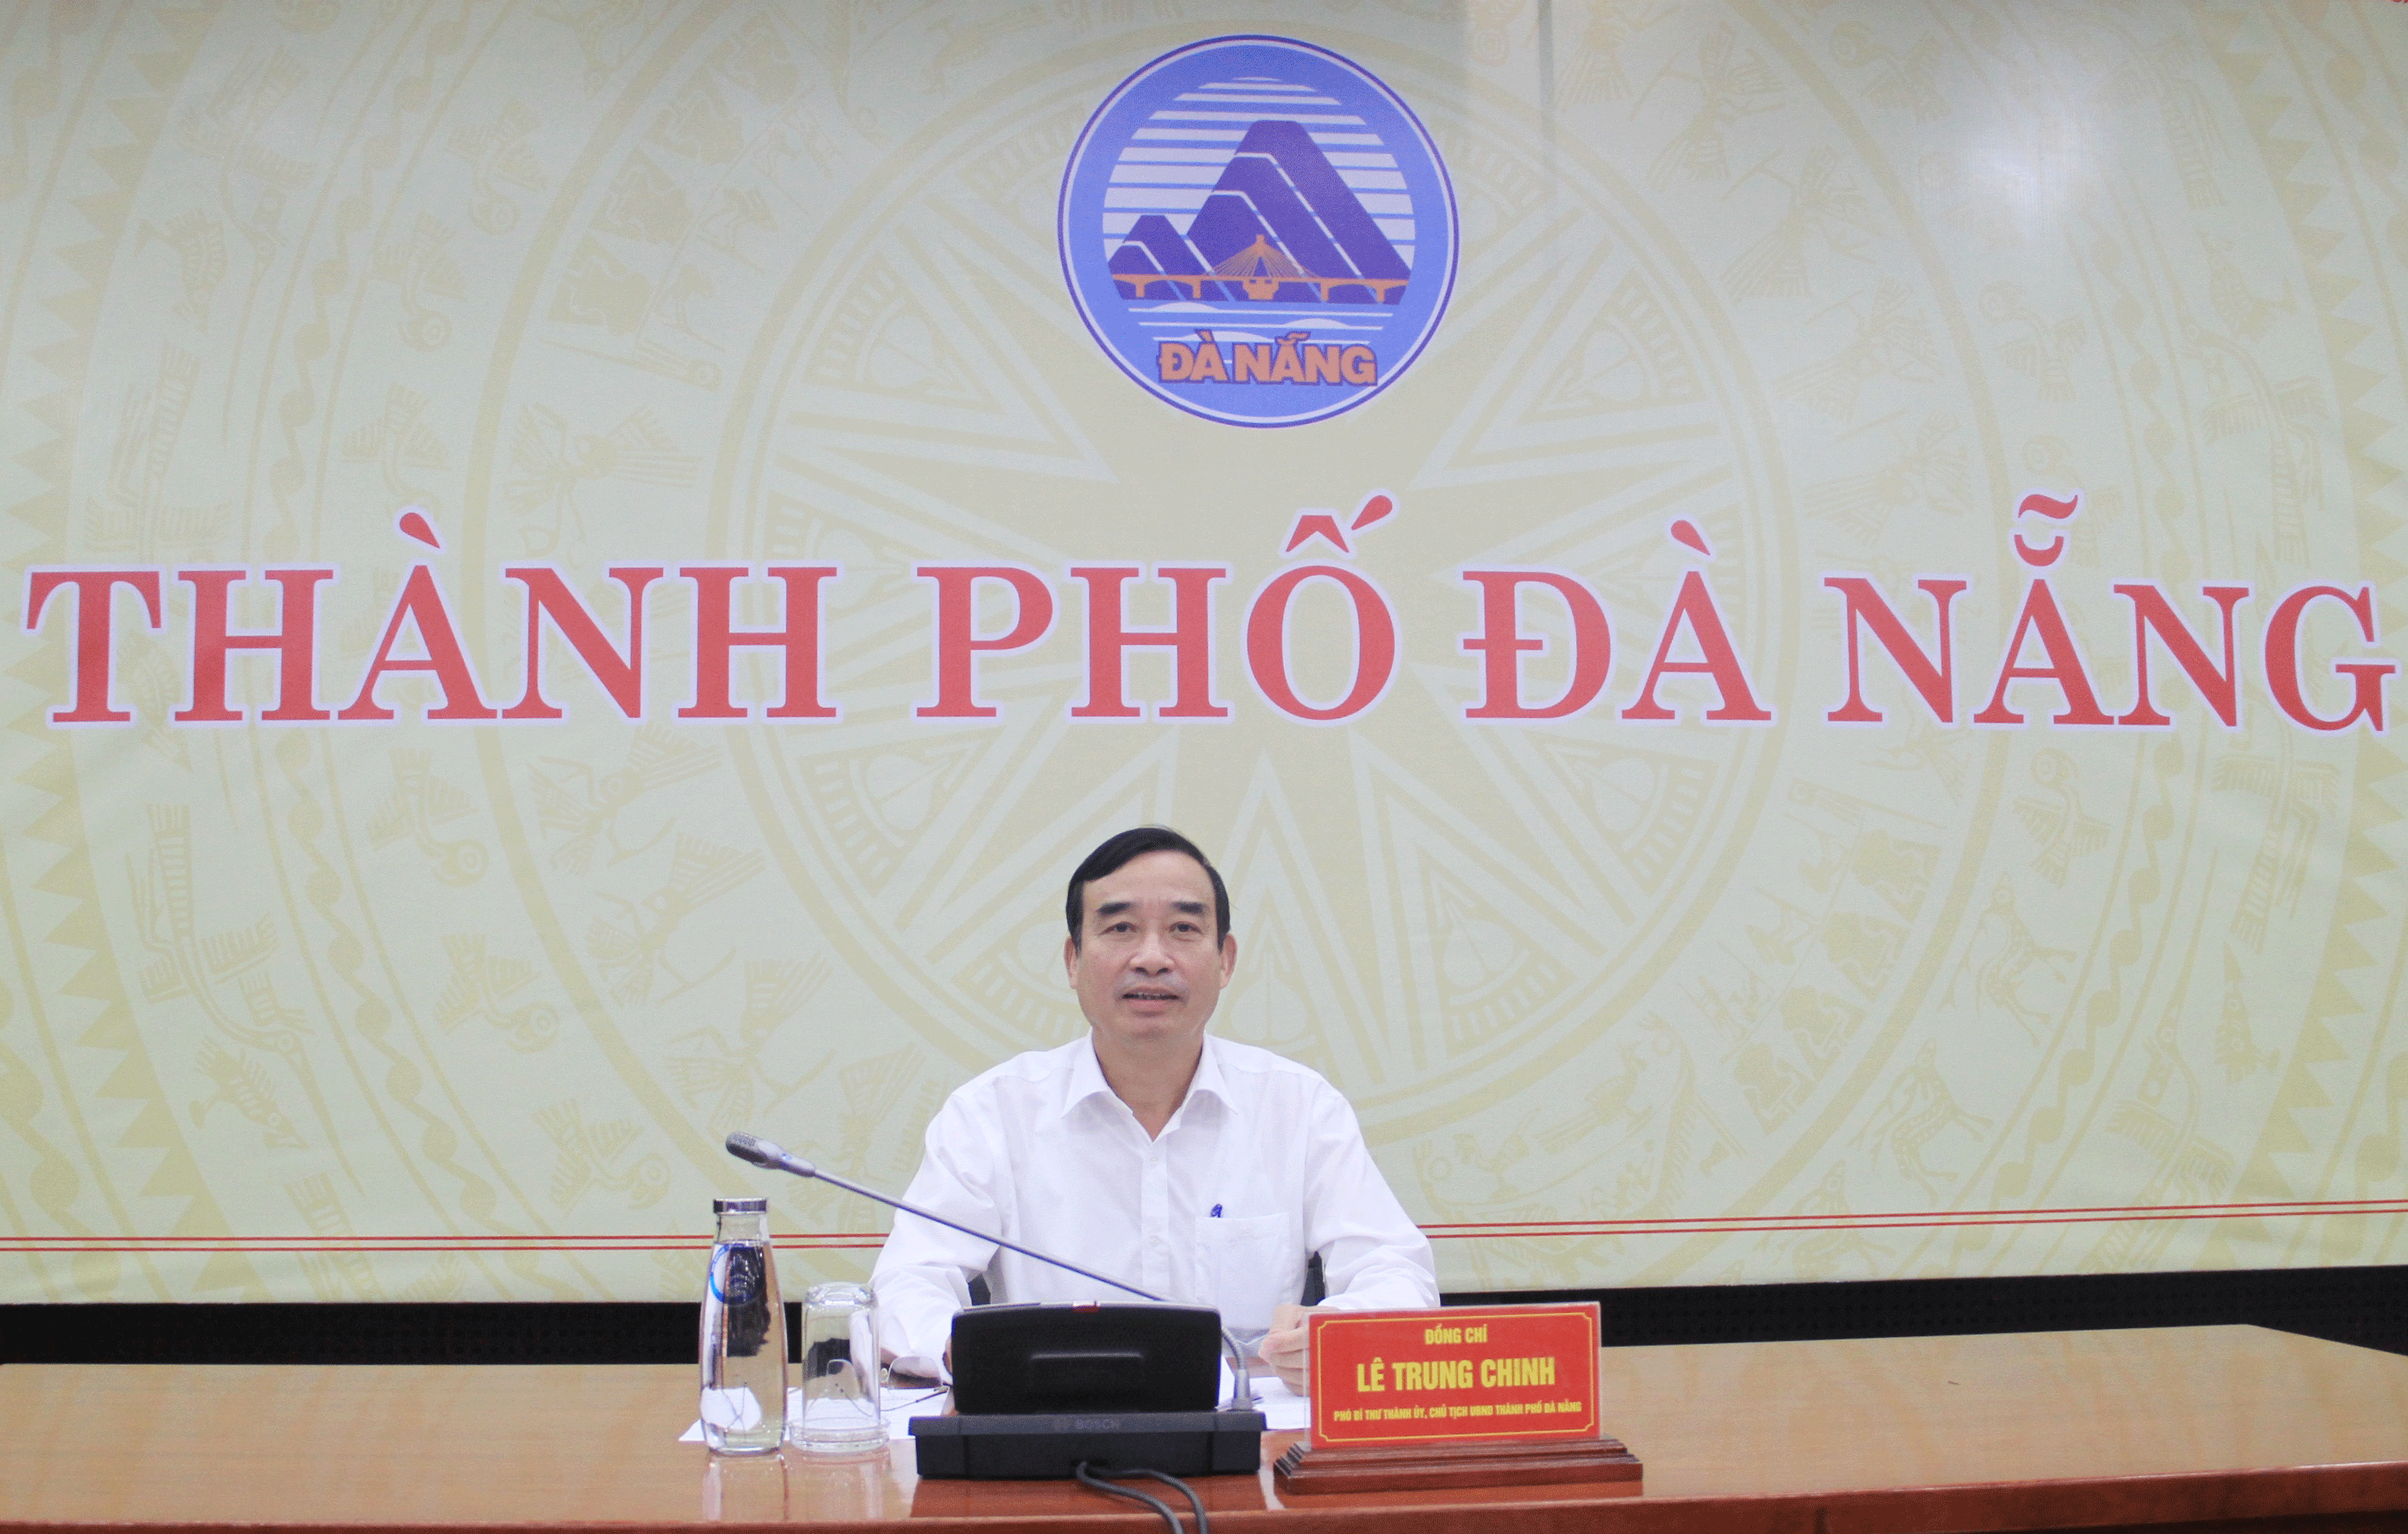 Ngày 25-3, Chủ tịch UBND thành phố Lê Trung Chinh chủ trì phiên họp UBND thành phố, thảo thuận, thông qua một số nội dung thuộc thẩm quyền của UBND thành phố.